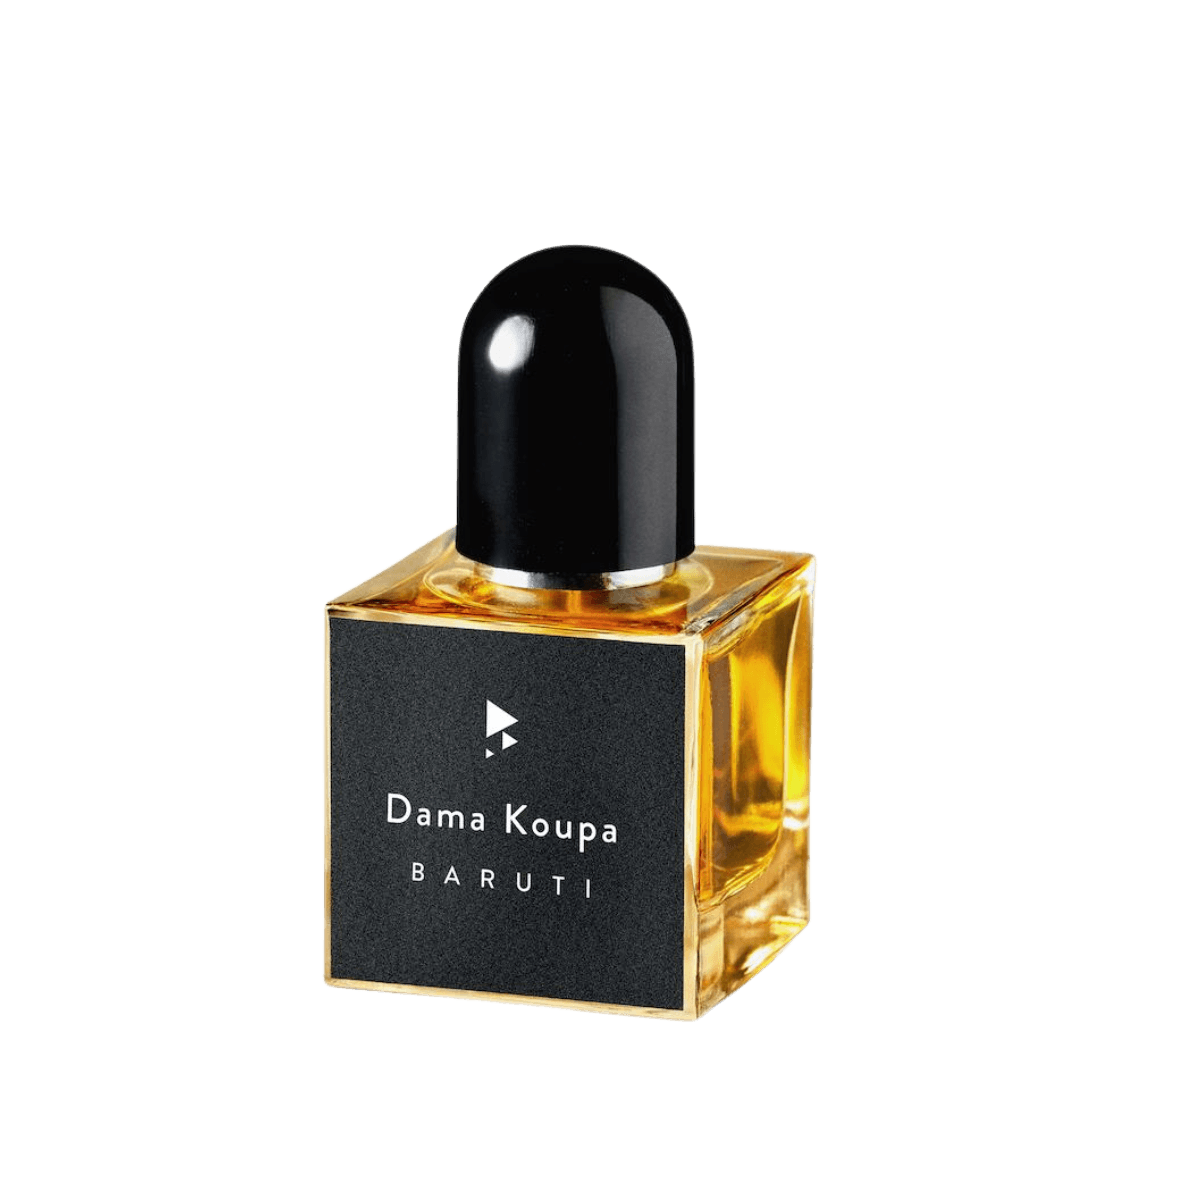 Image of the perfume Dama Koupa by the brand Baruti